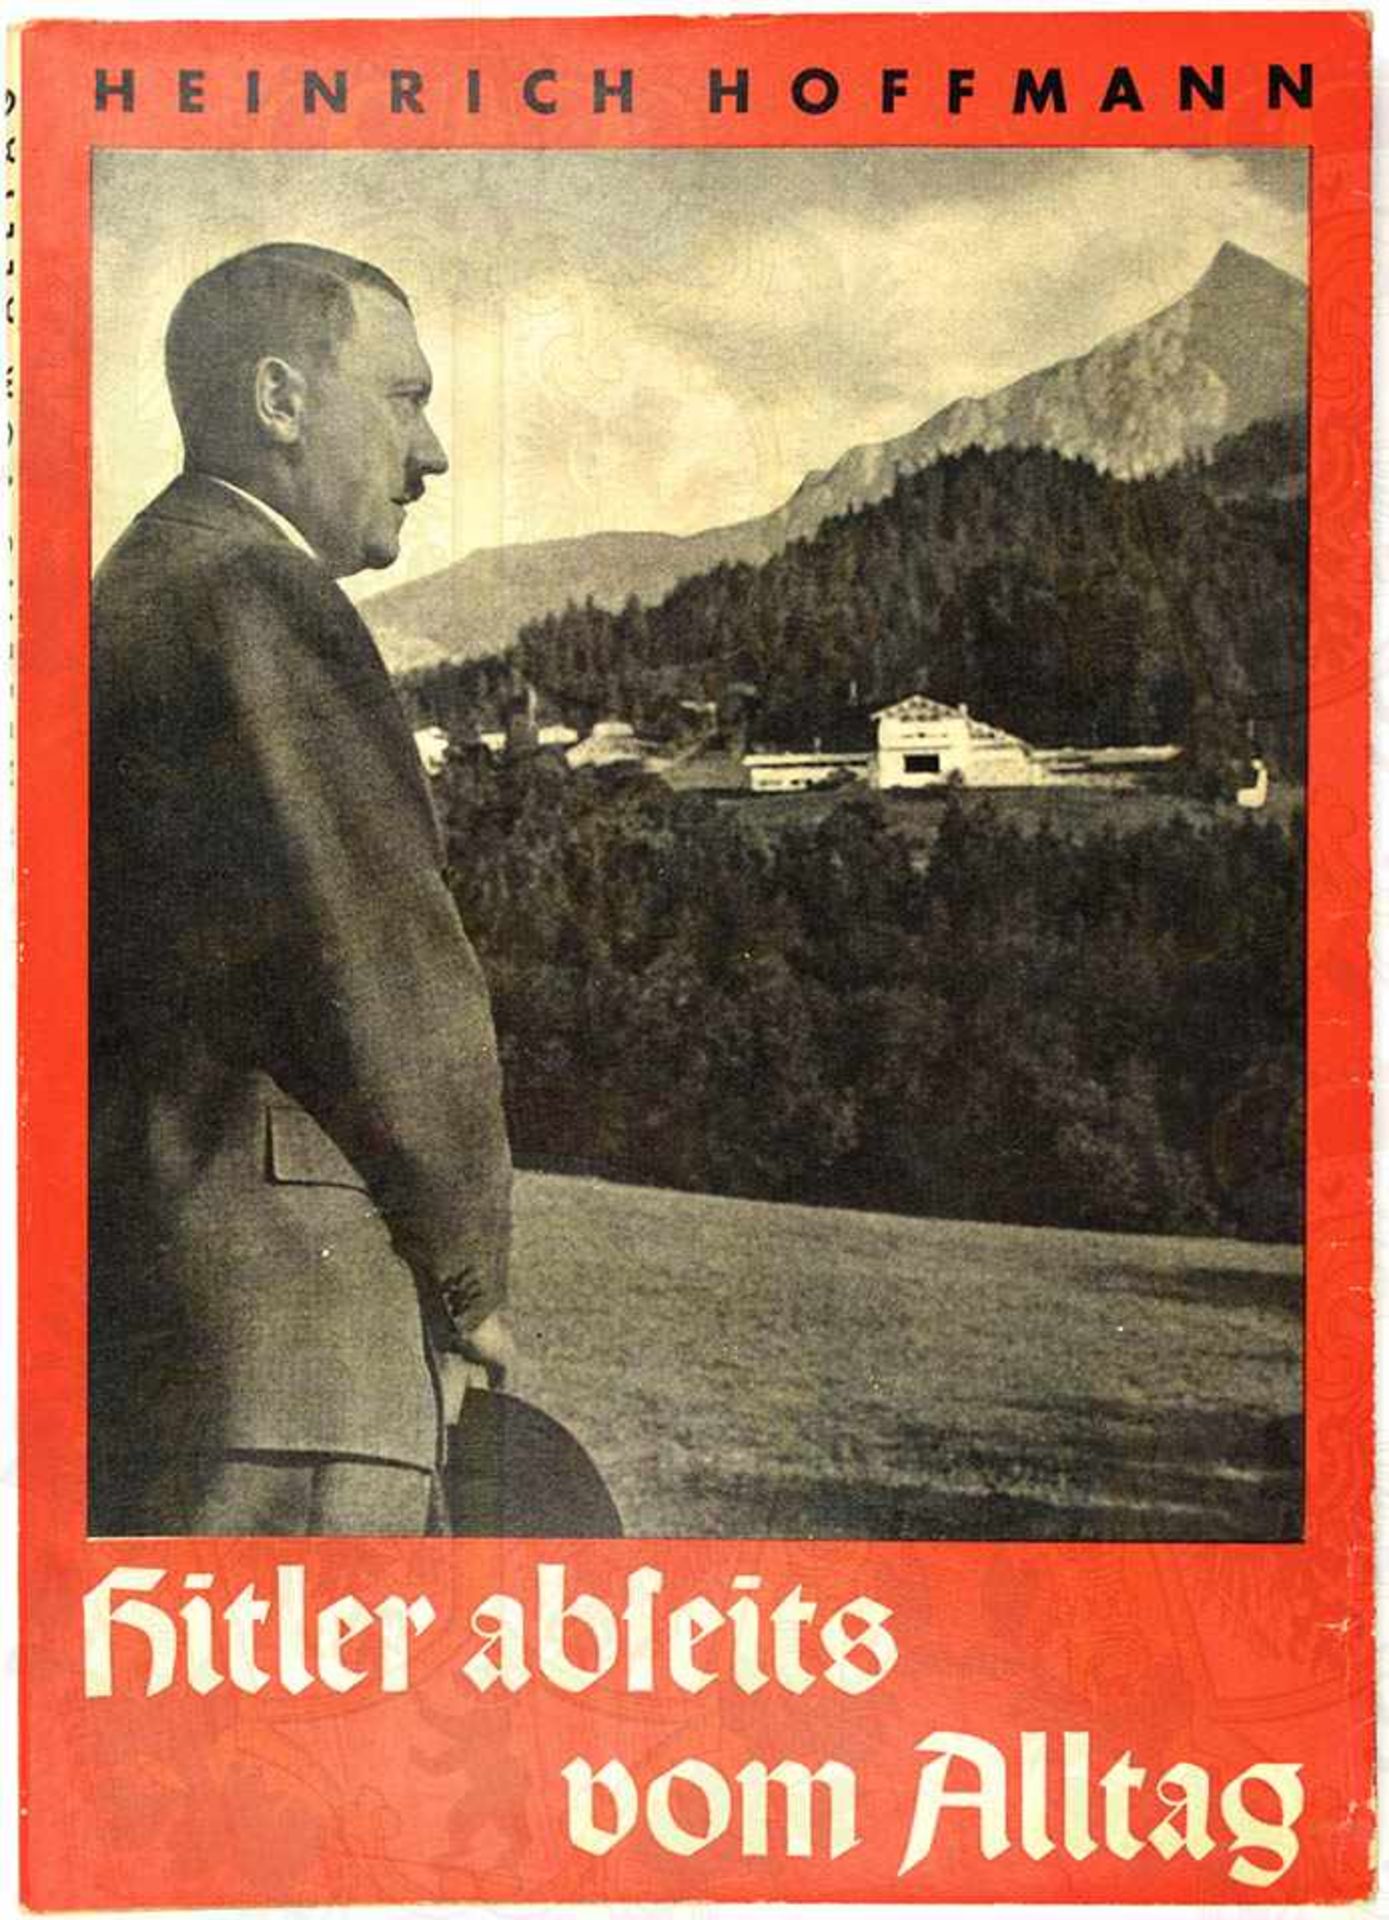 HITLER ABSEITS VOM ALLTAG, Hoffmann-Fotoband 1937, 94 S., kart., SU